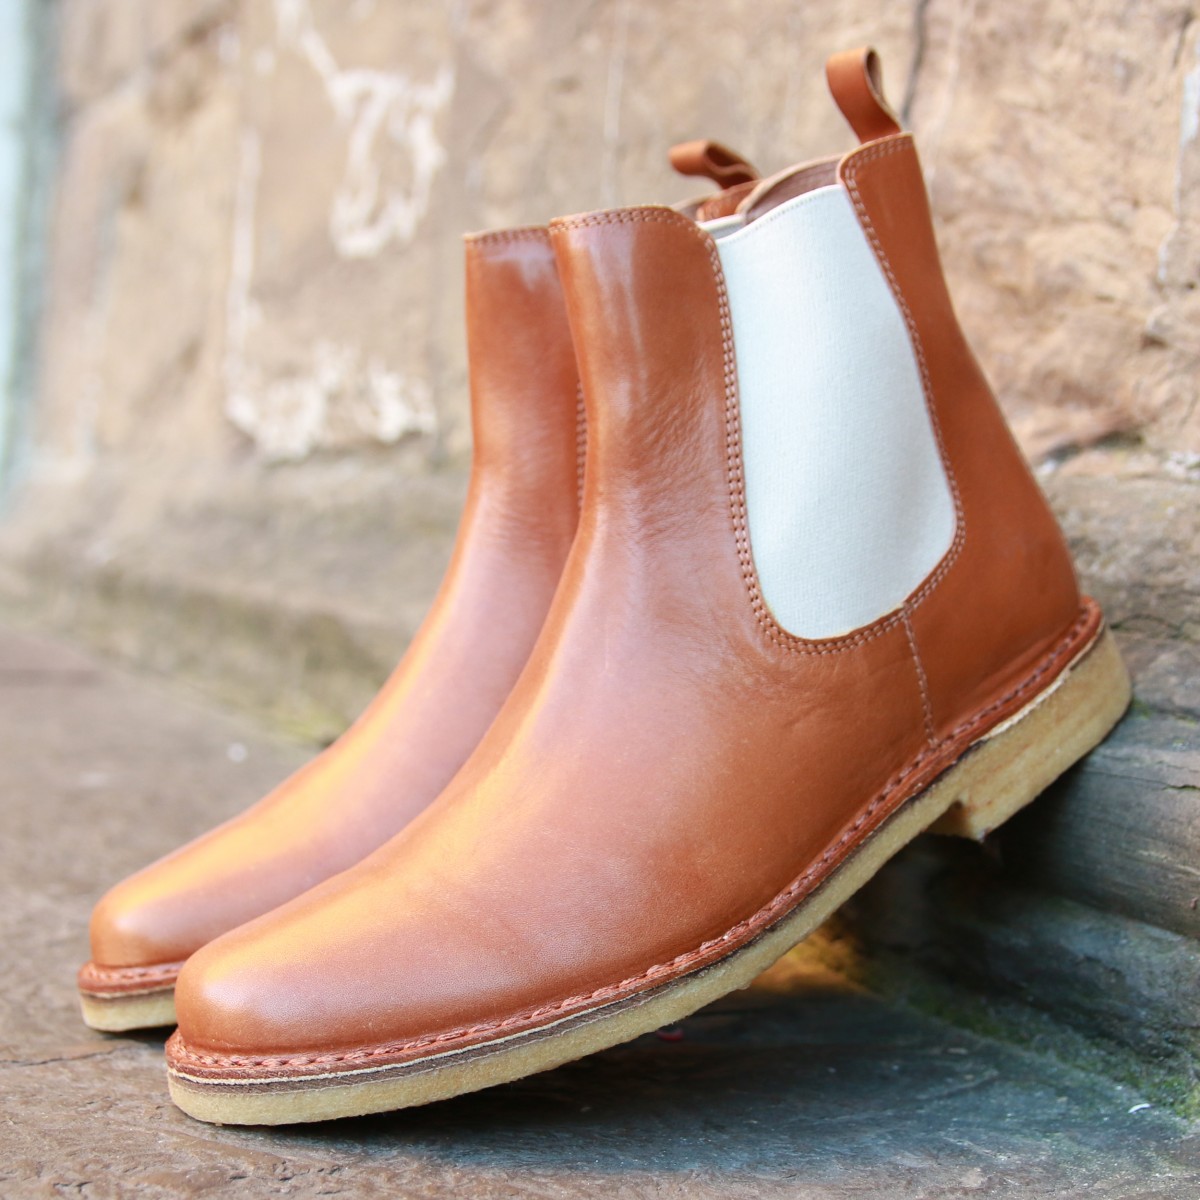 Pelle Marroni-boots interamente a mano 6,5 cm di lunghezza suole F shabby orso o BAMBOLA 